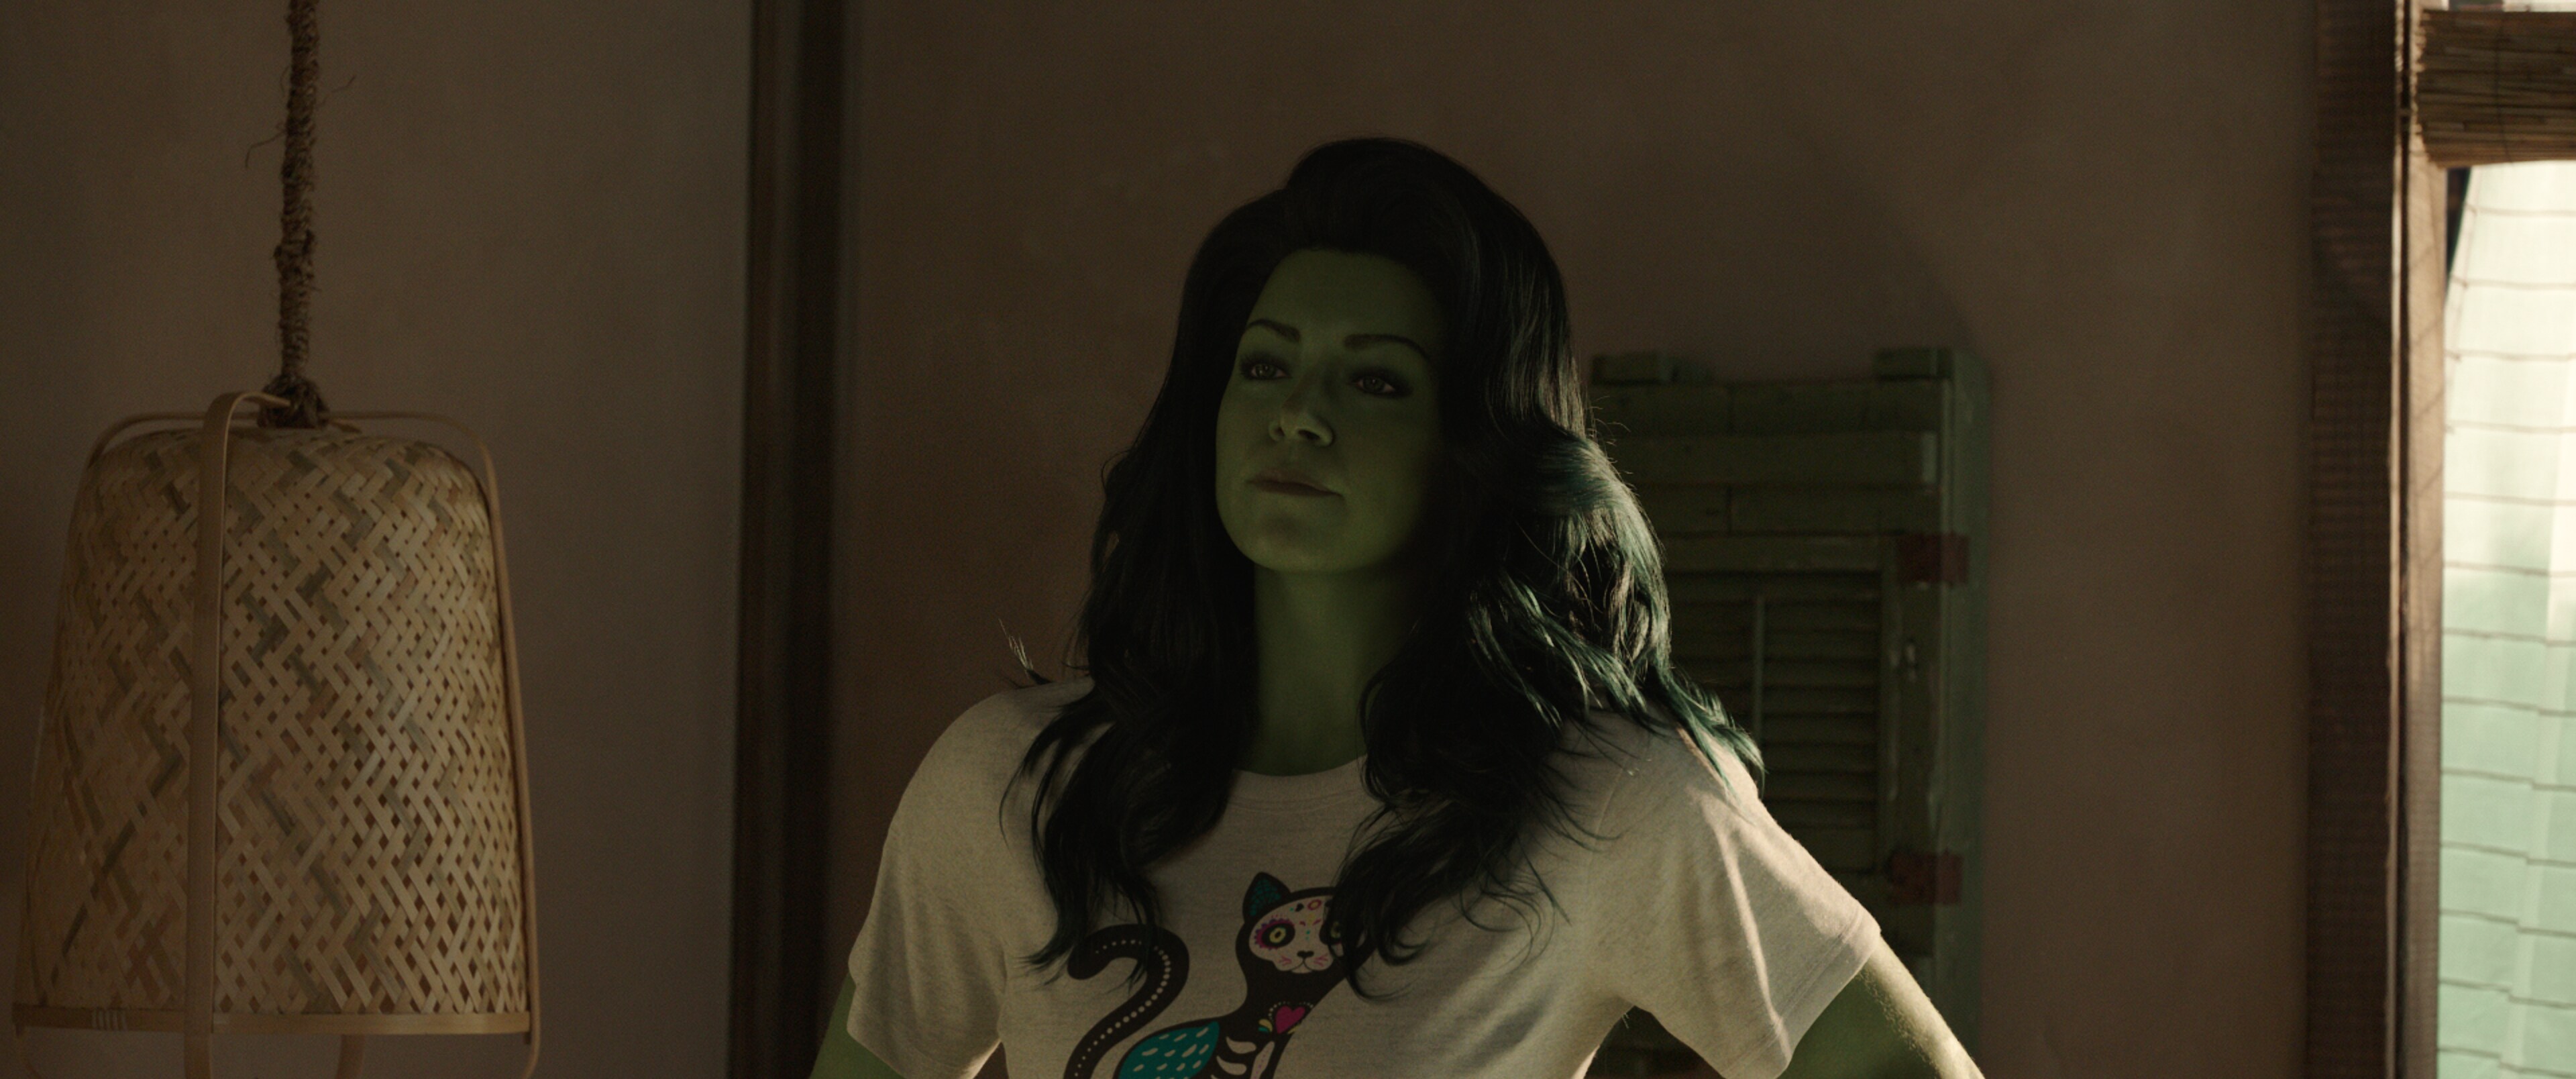 Mulher-Hulk – Defensora de Heróis': quem é quem no elenco da nova série da  Marvel